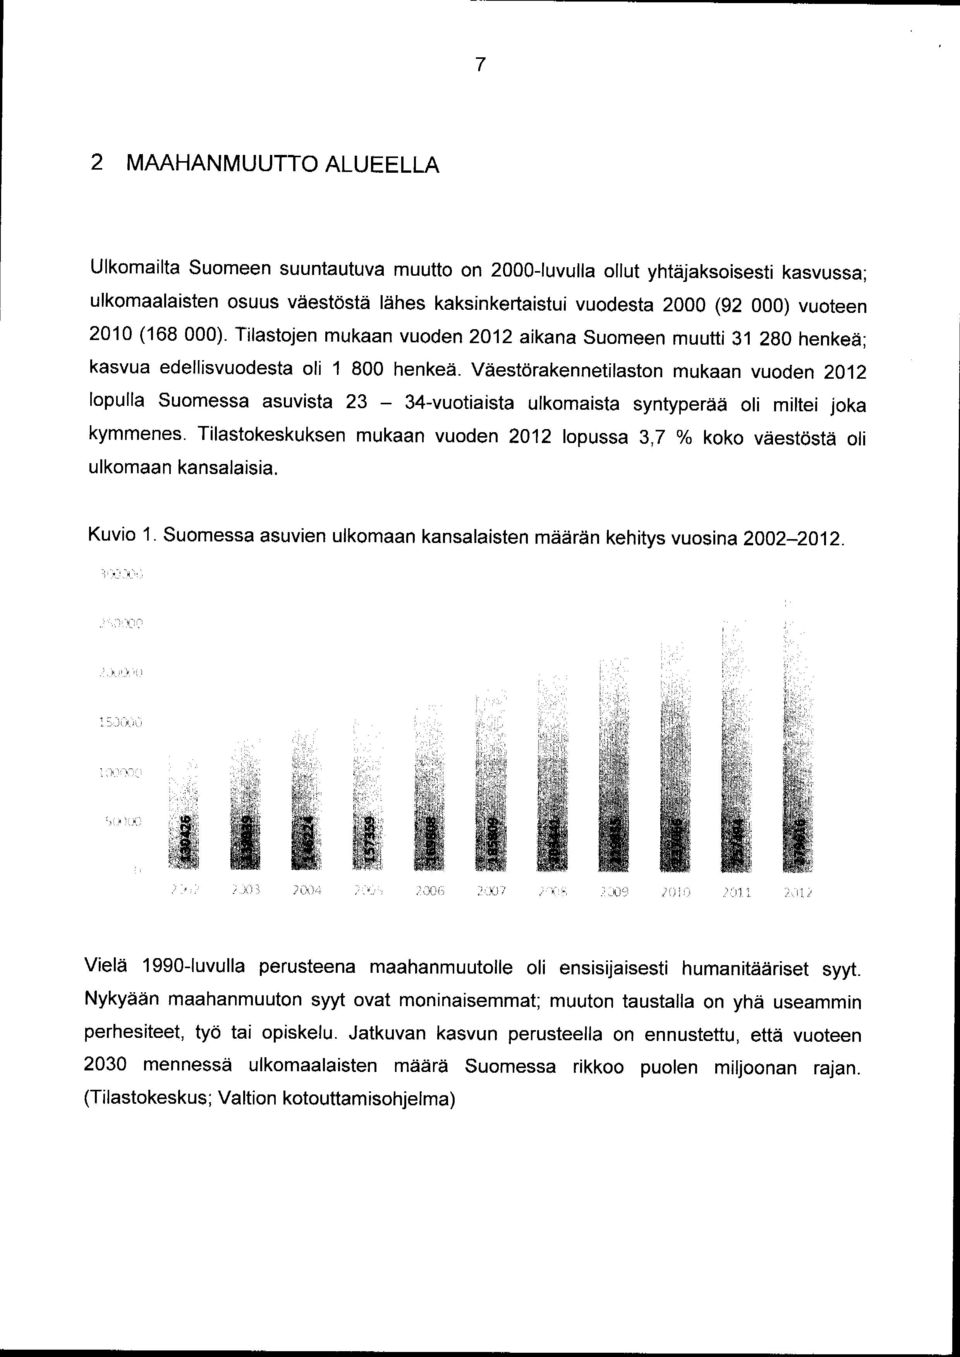 Väestörakennetilaston mukaan vuoden 2012 lopulla Suomessa asuvista 23-34-vuotiaista ulkomaista syntyperää oli miltei joka kymmenes.